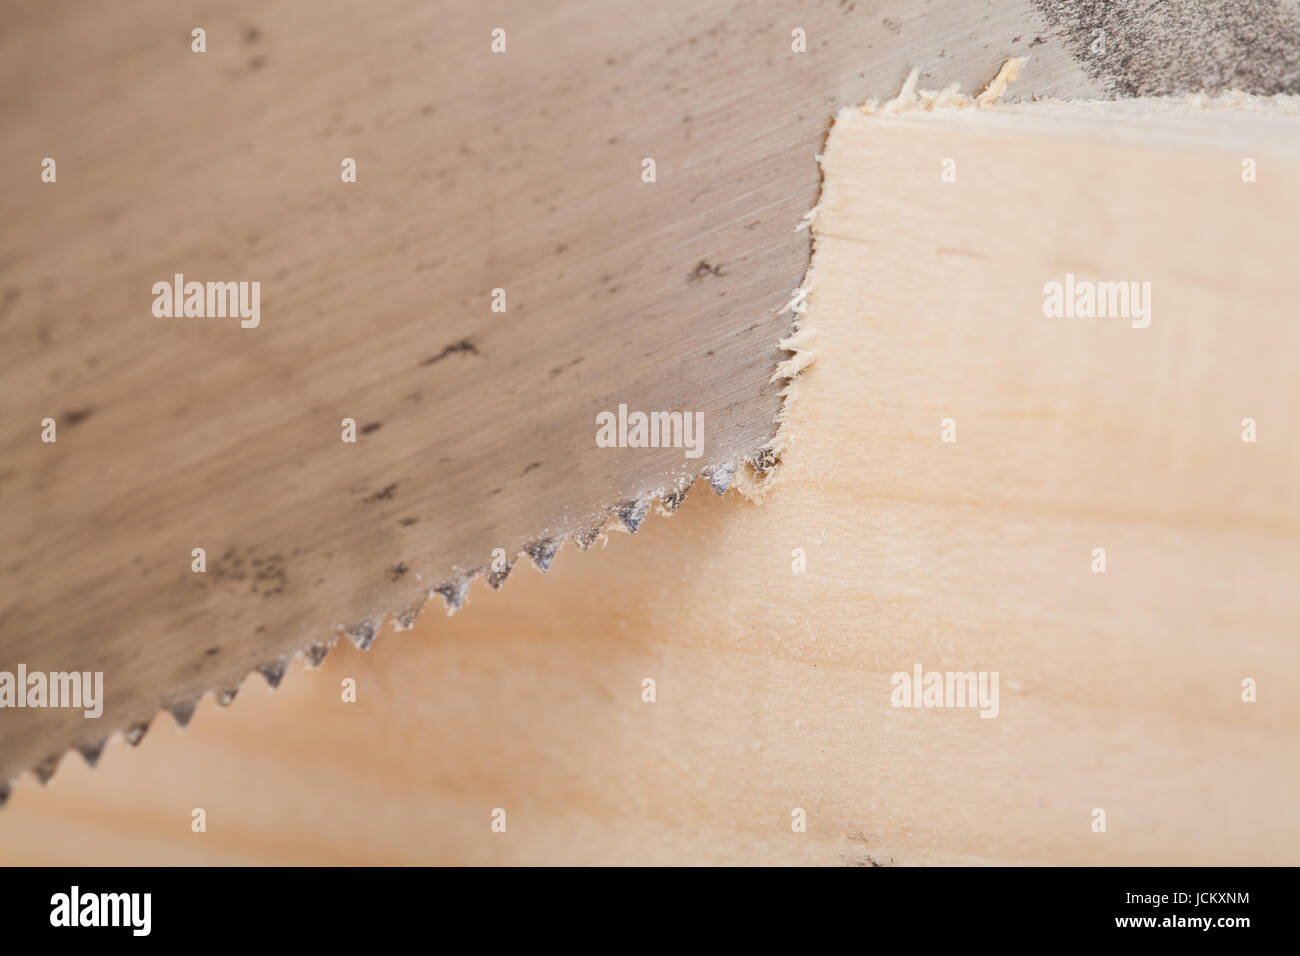 Holz mit Winkelschneider und Säge in einer Werkstatt nahaufnahme detail Stock Photo